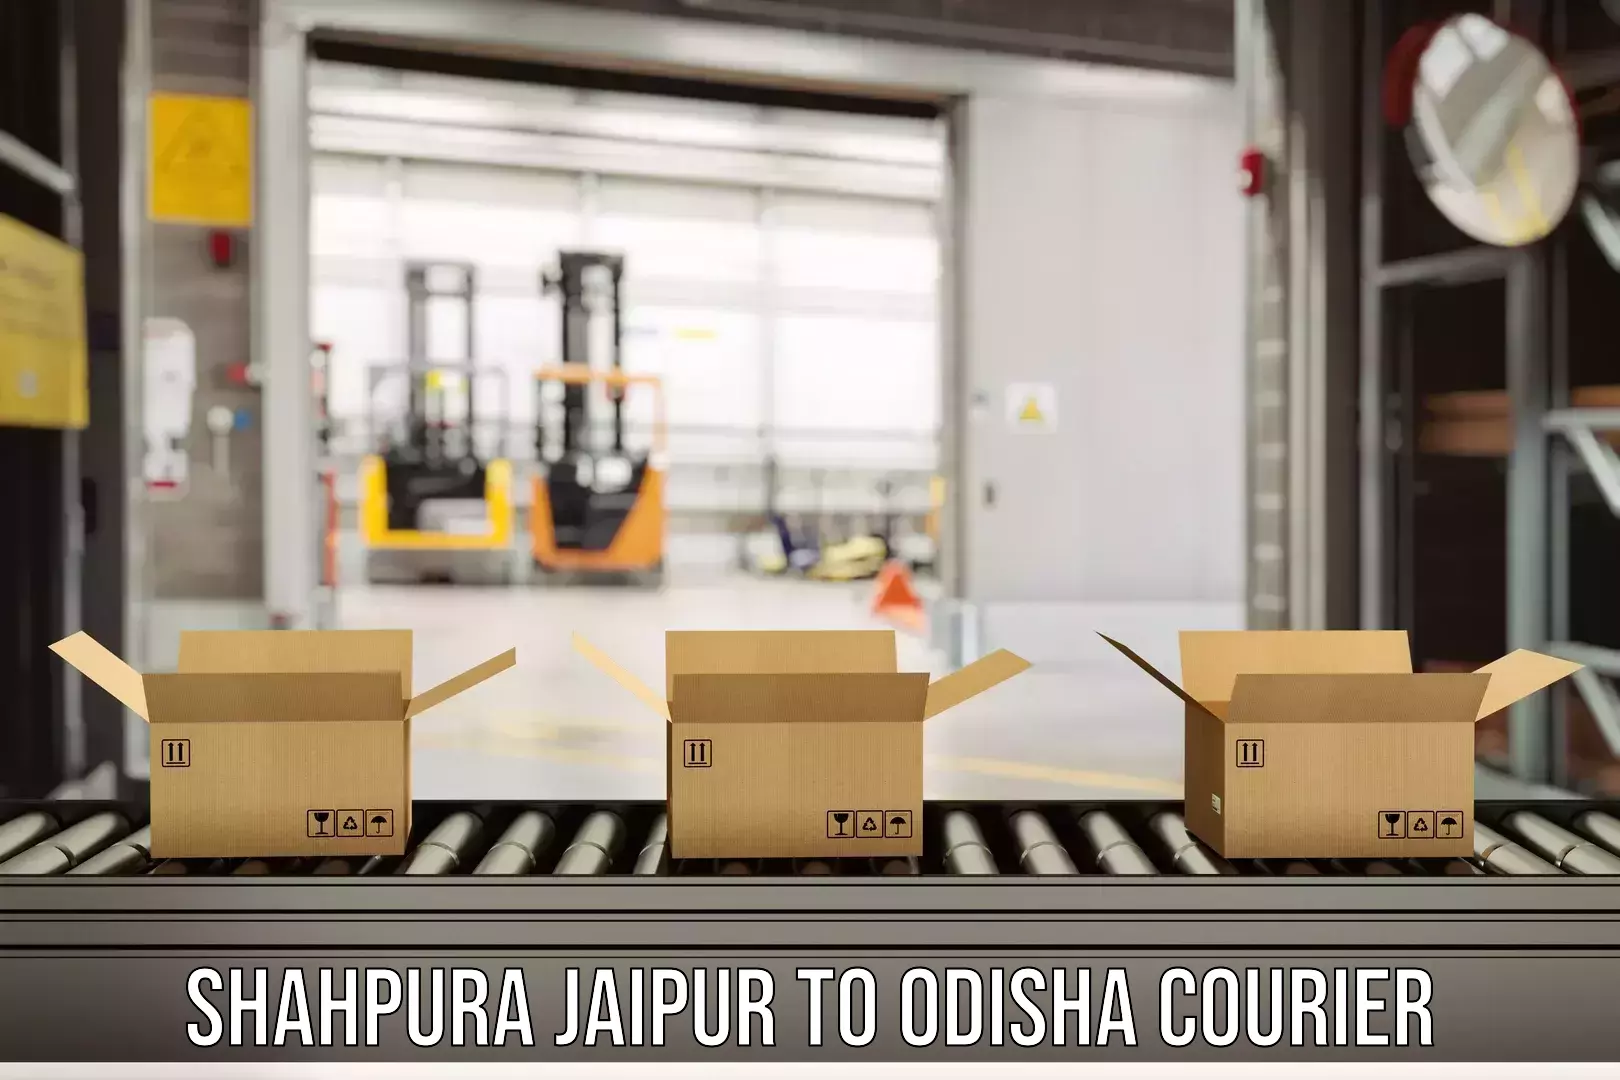 Fast-track shipping solutions Shahpura Jaipur to Sambalpur